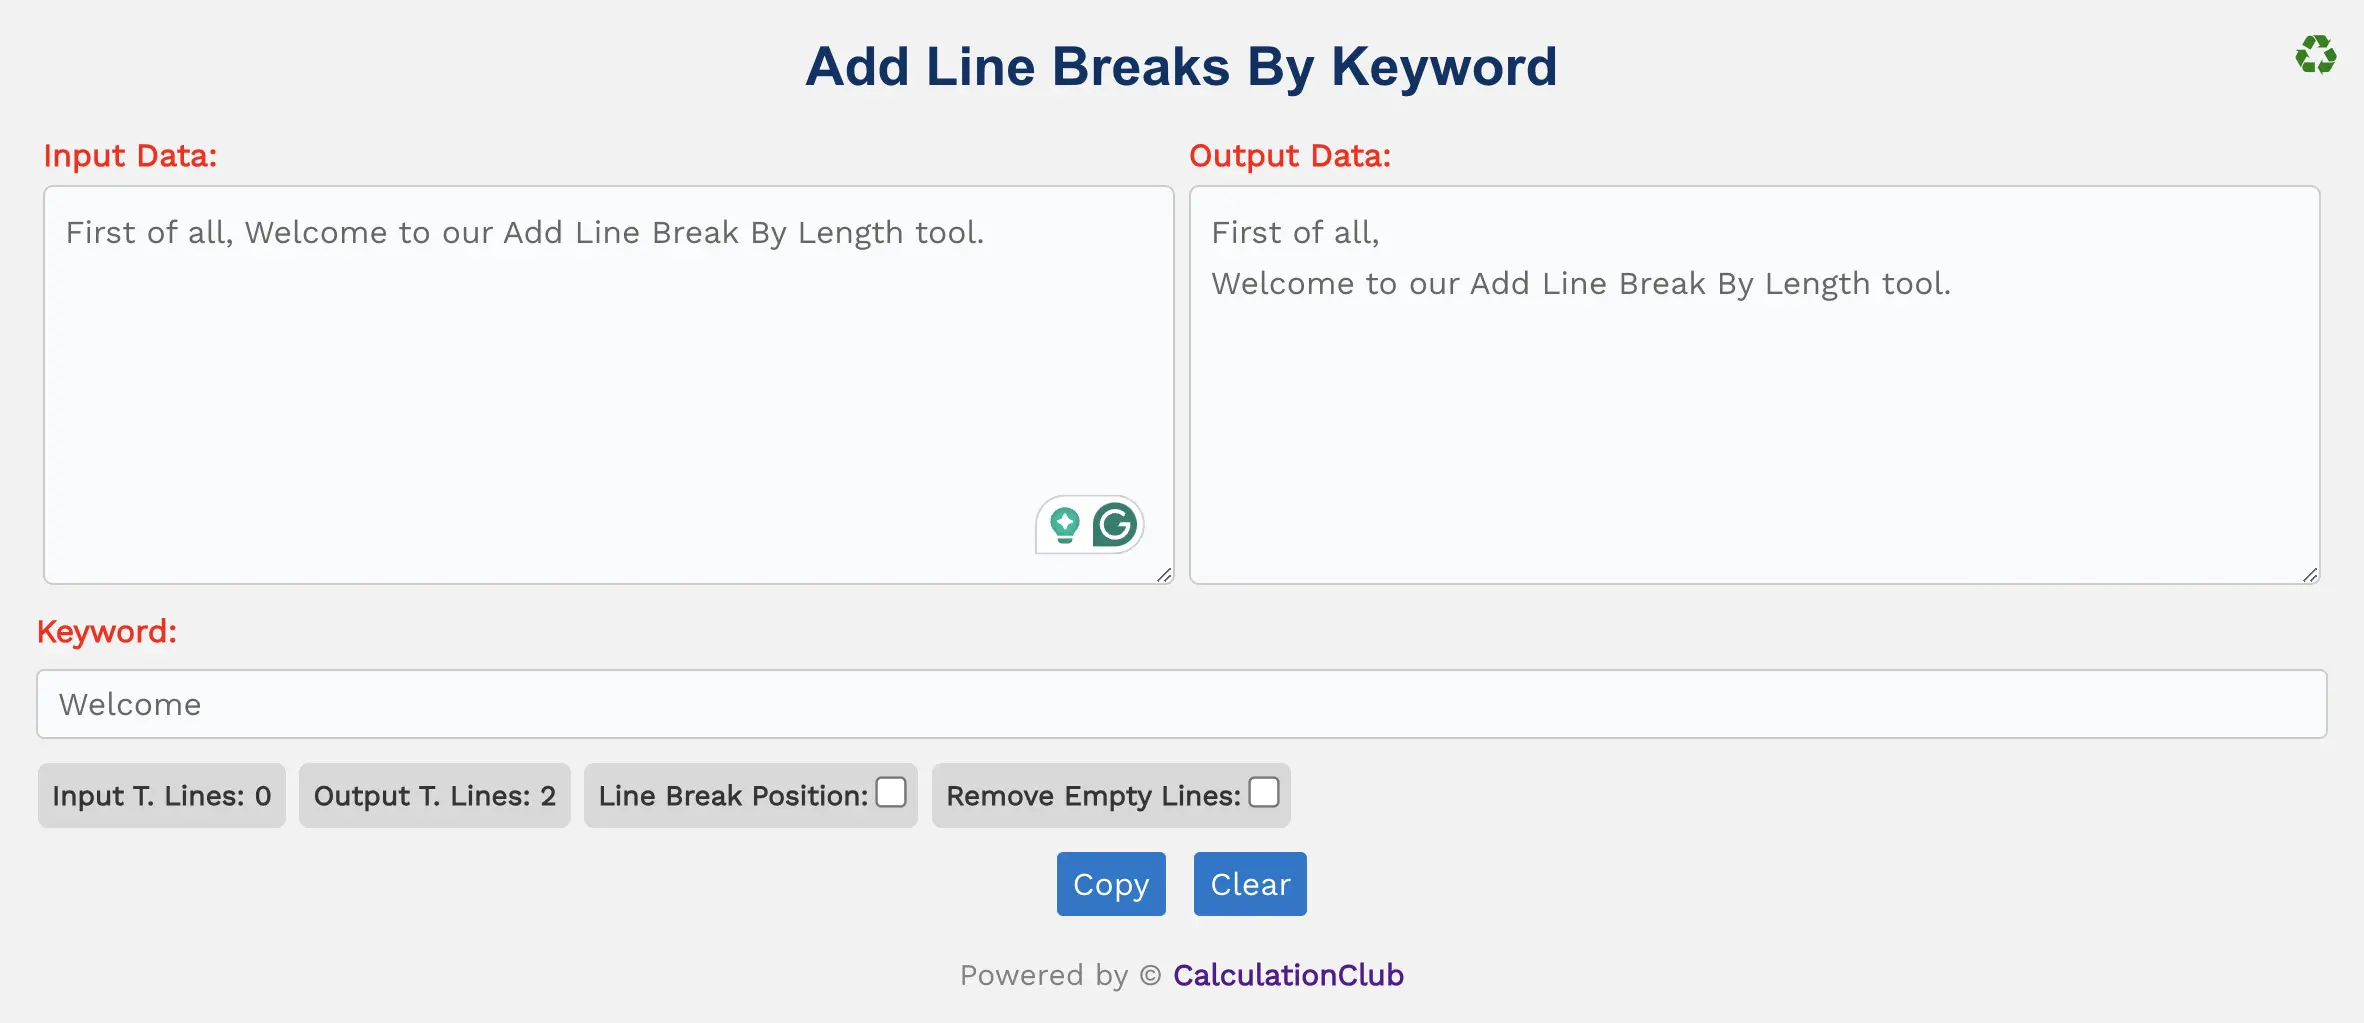 Add Line Breaks By Keyword